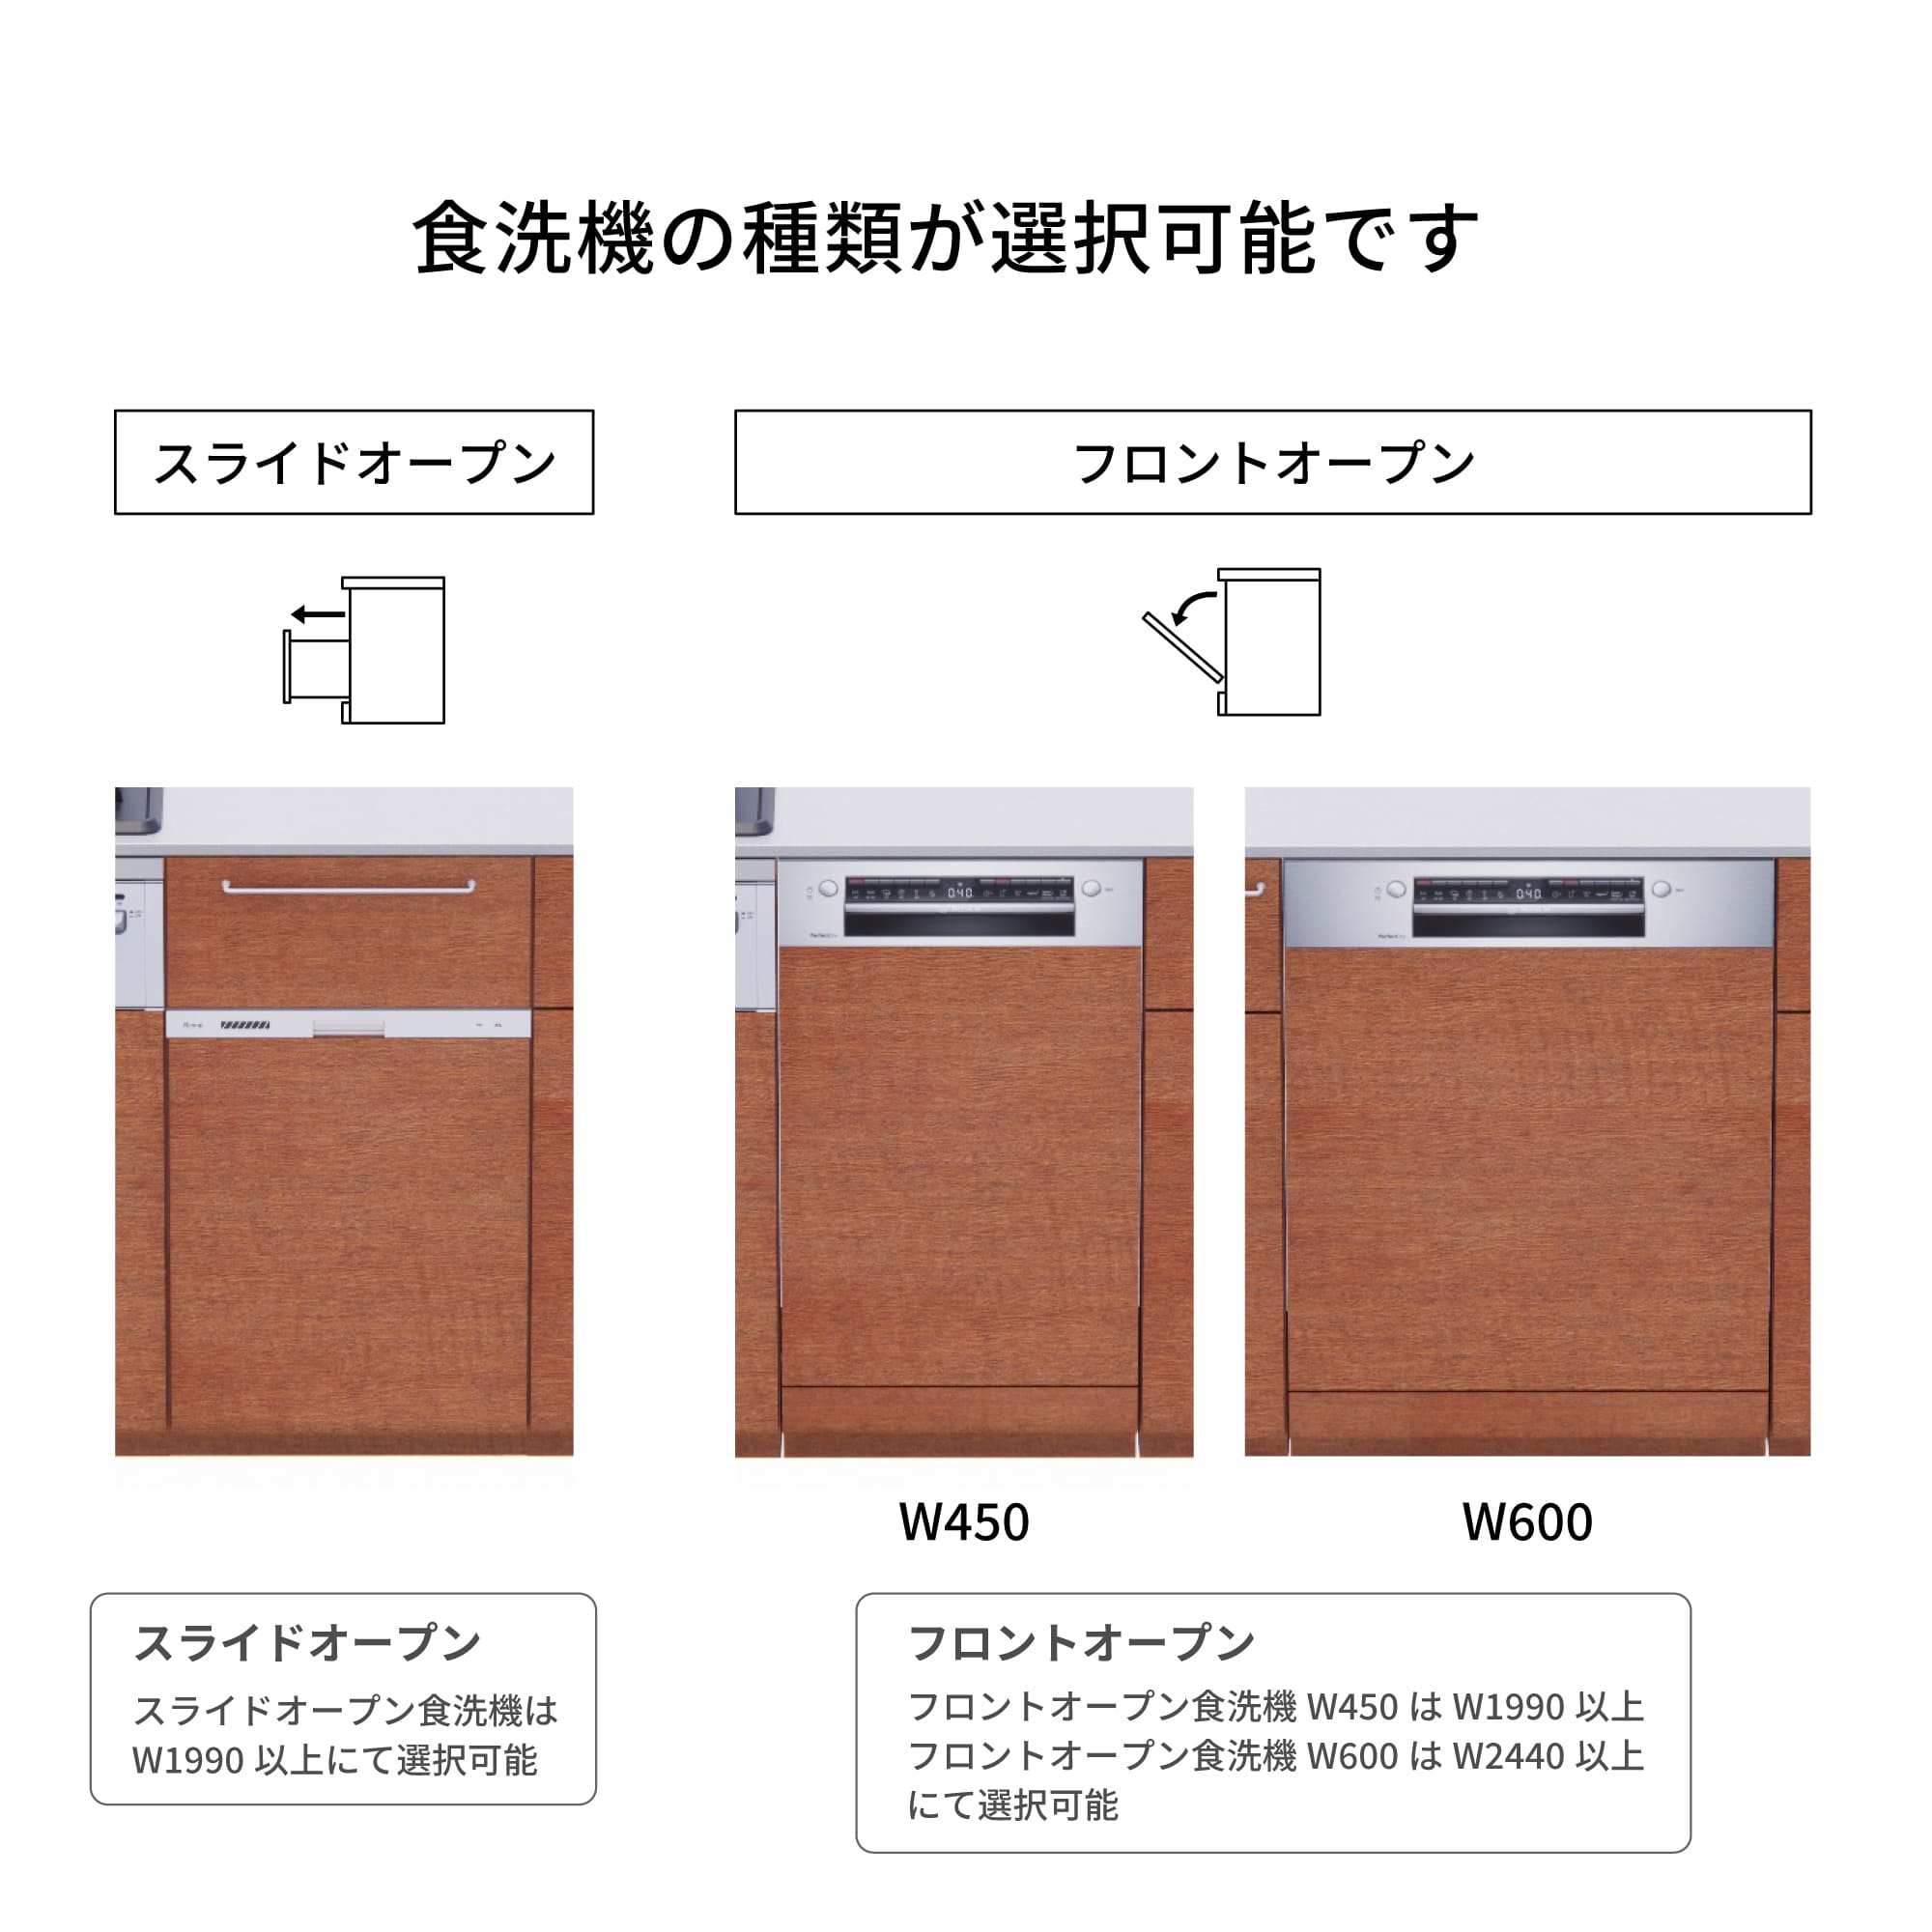 木製システムキッチン 壁付け型 W2440～2740・コンロなし / オーブンなし / 食洗機あり KB-KC022-27-G183 食洗機が選択できます